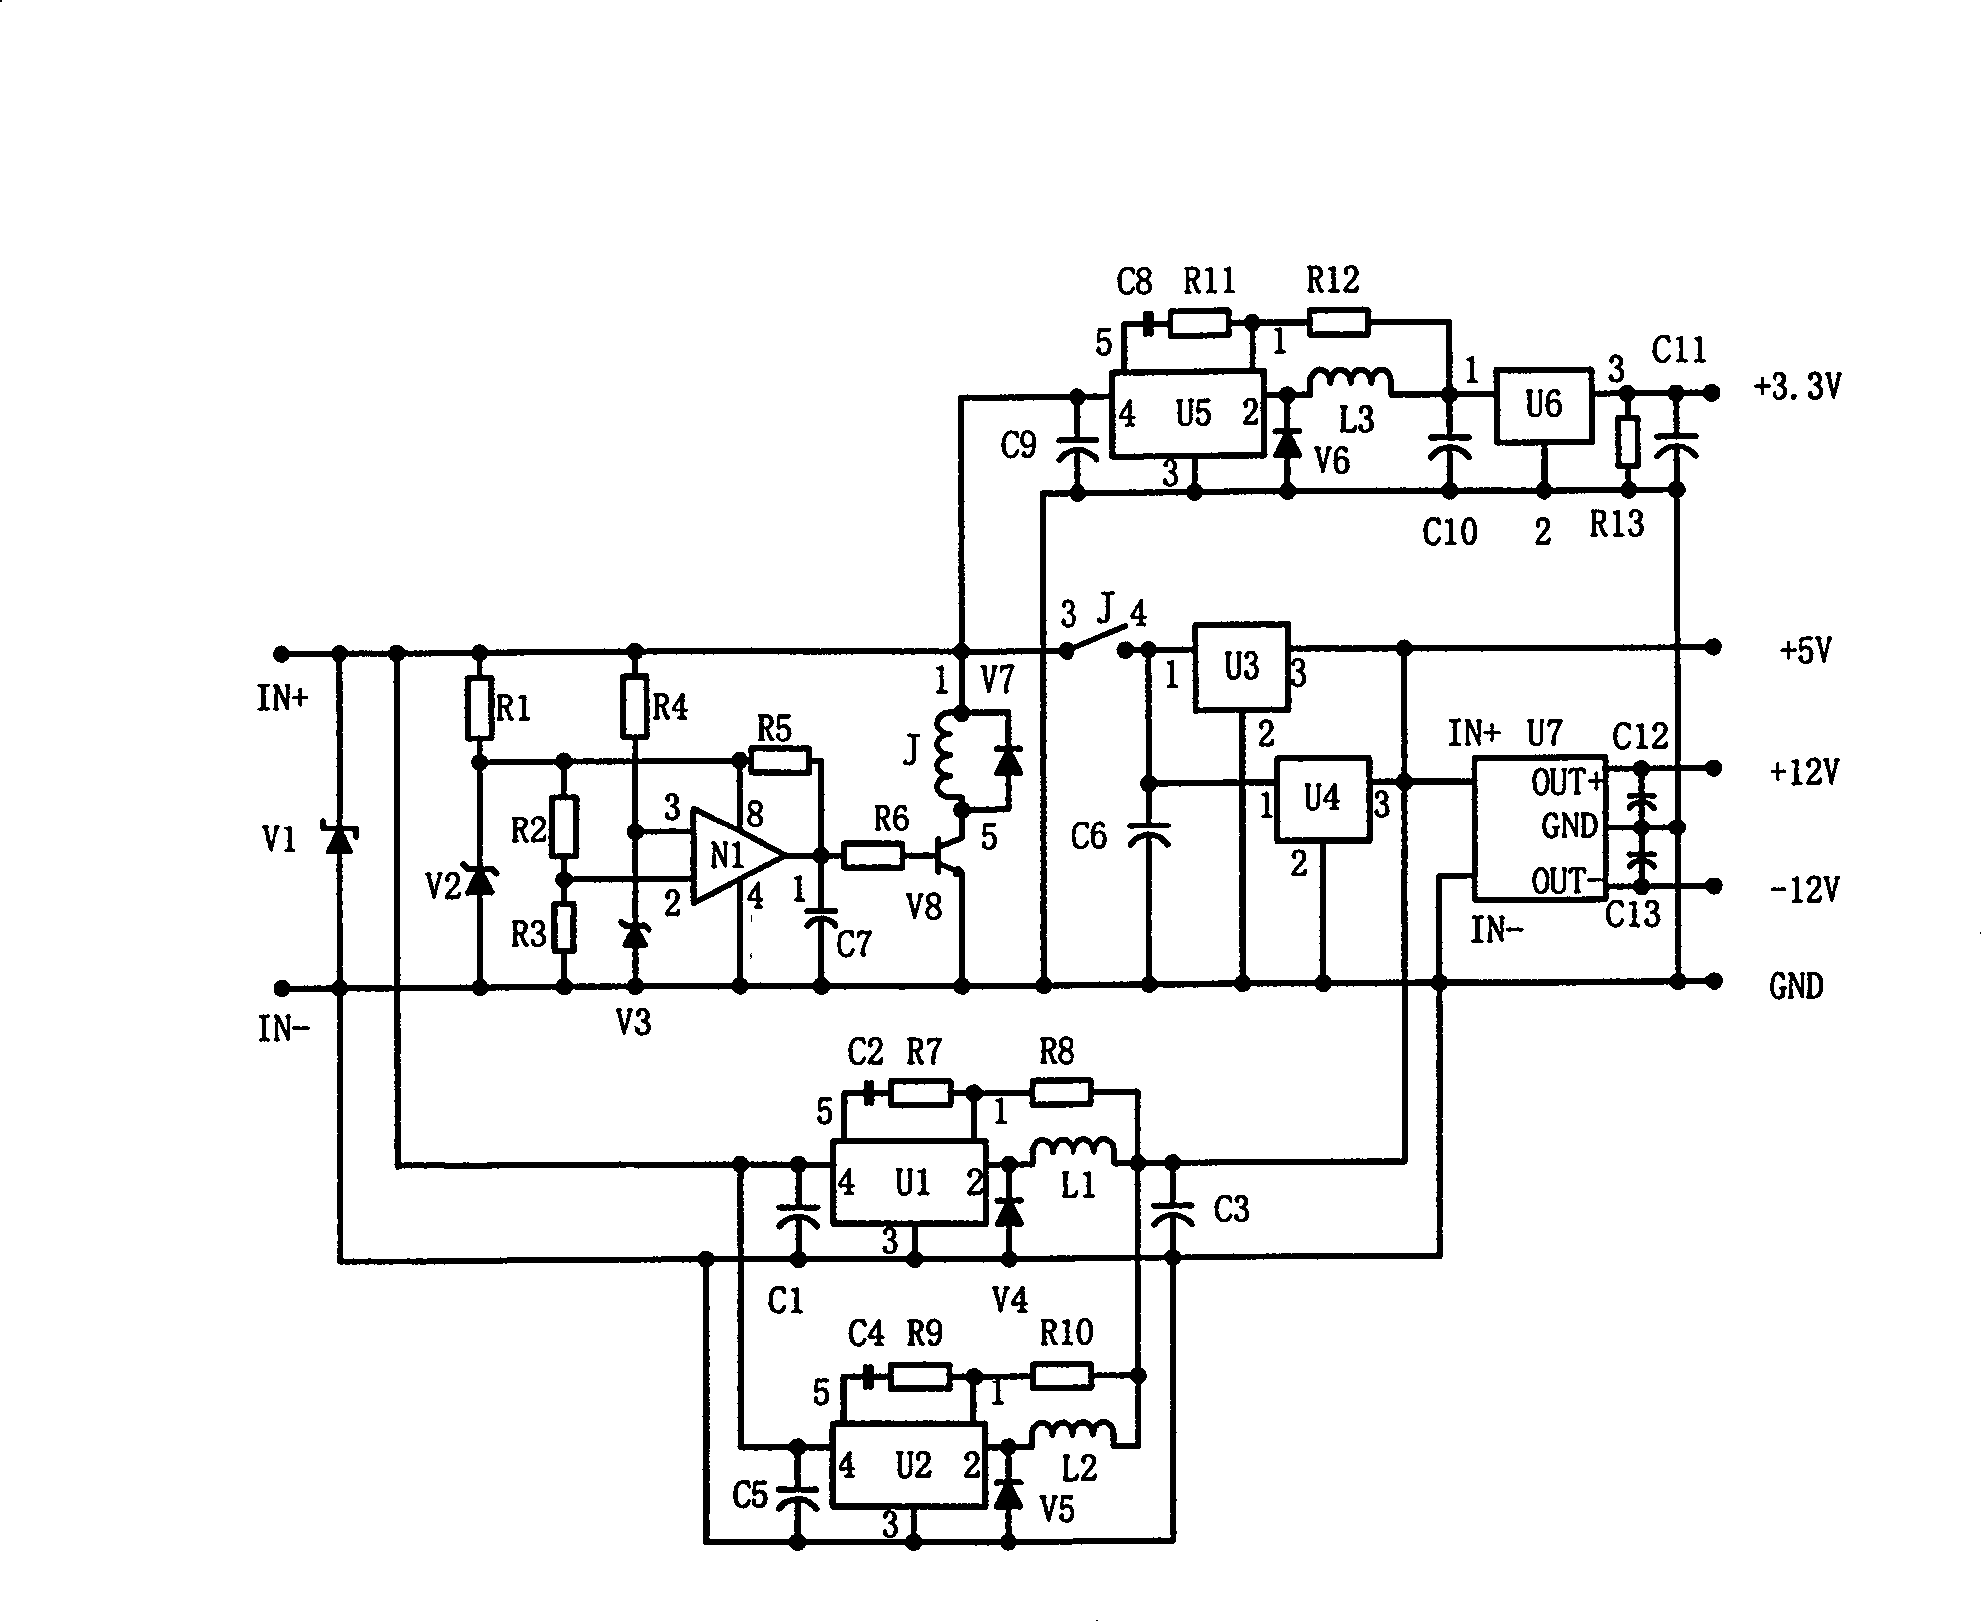 DC power voltage stabilizing transformer